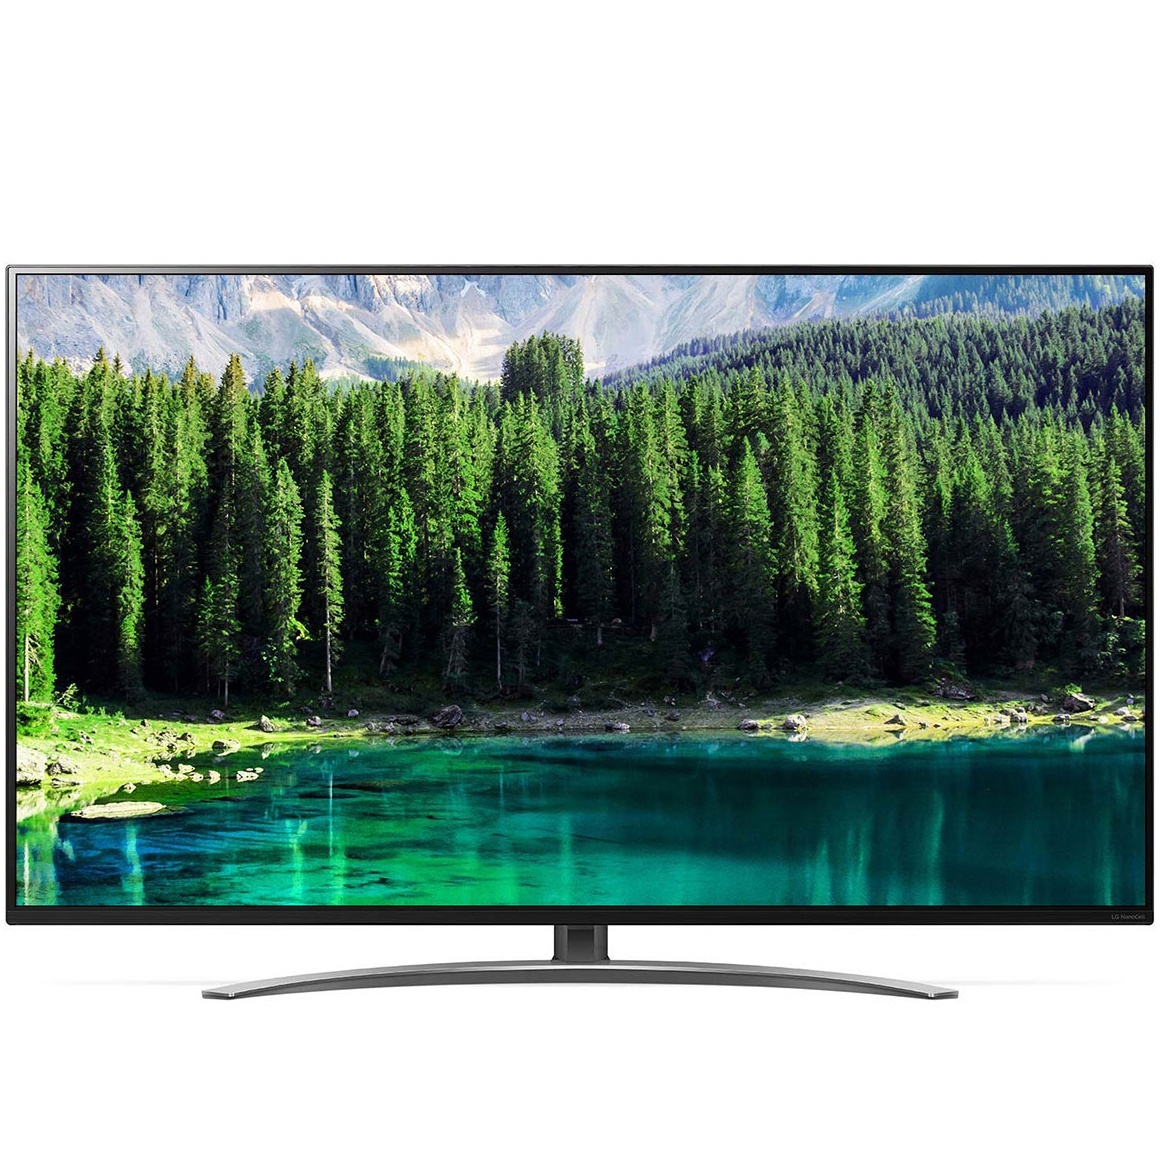 LG NanoCell Smart TV 55 inch 4K Cinema HDR IPS 55SM8600PTA chính hãng